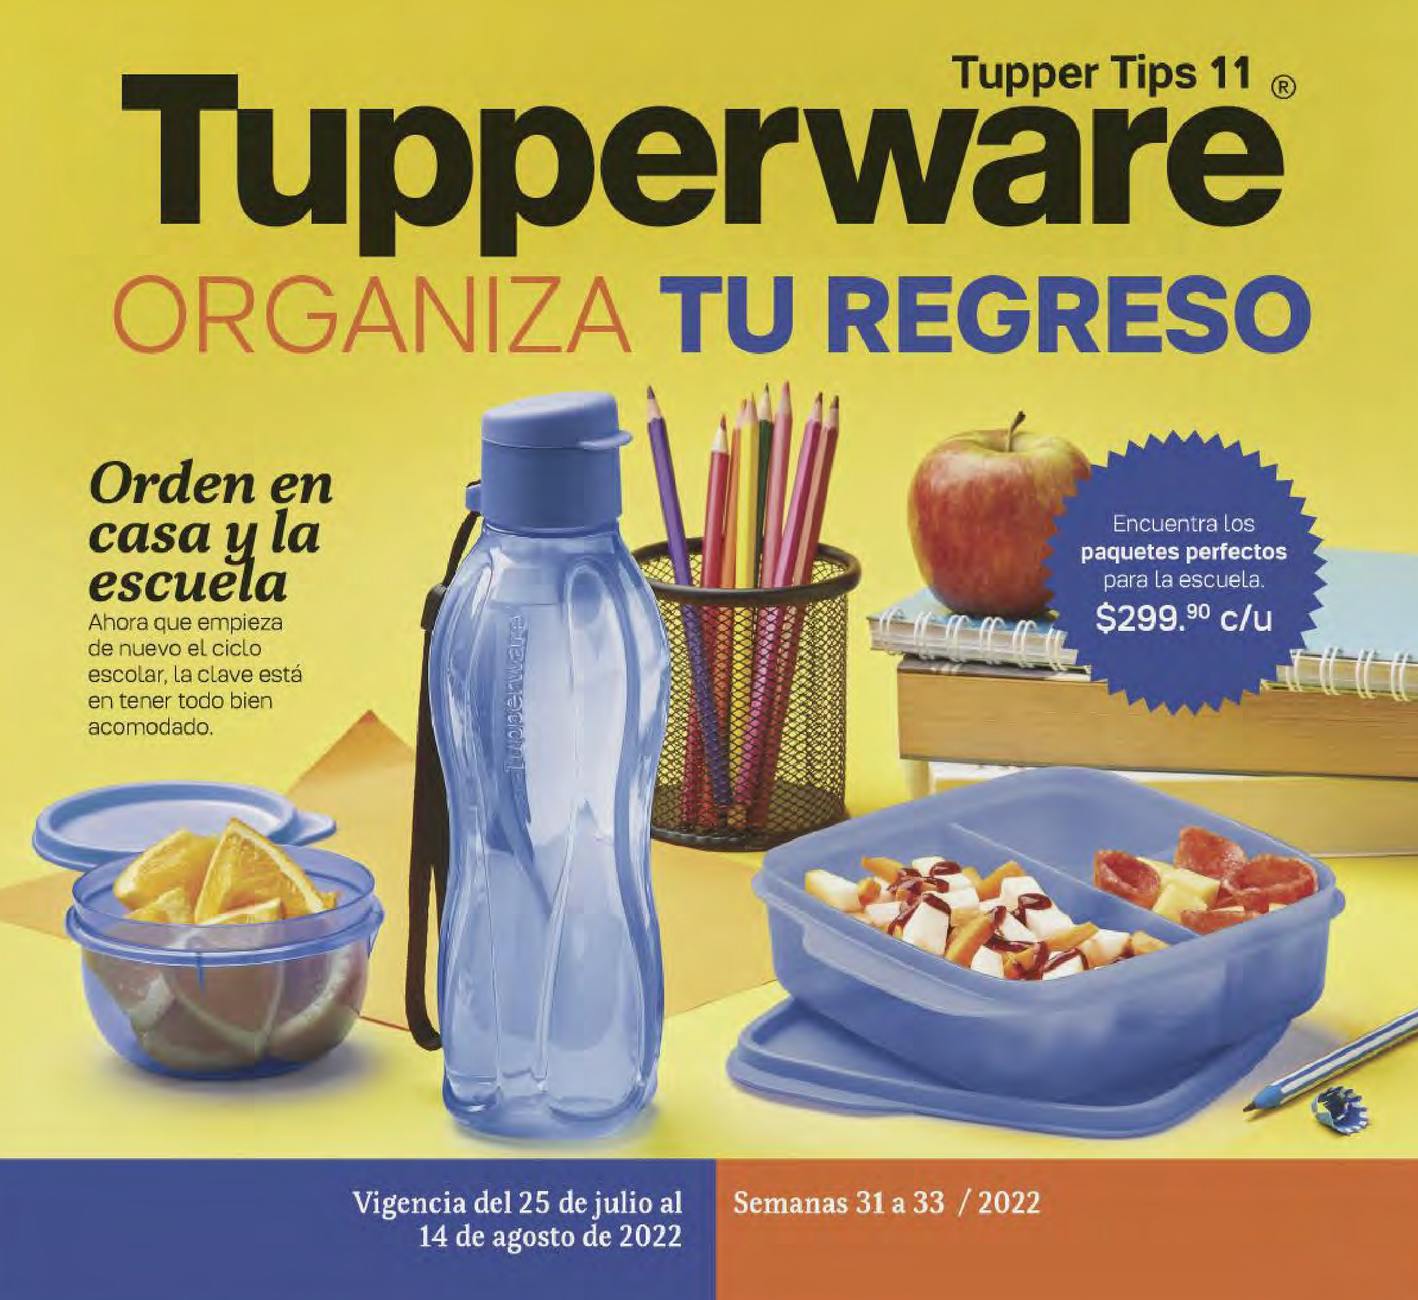 Catálogo Tupperware Tupper Tips 11 2022 México